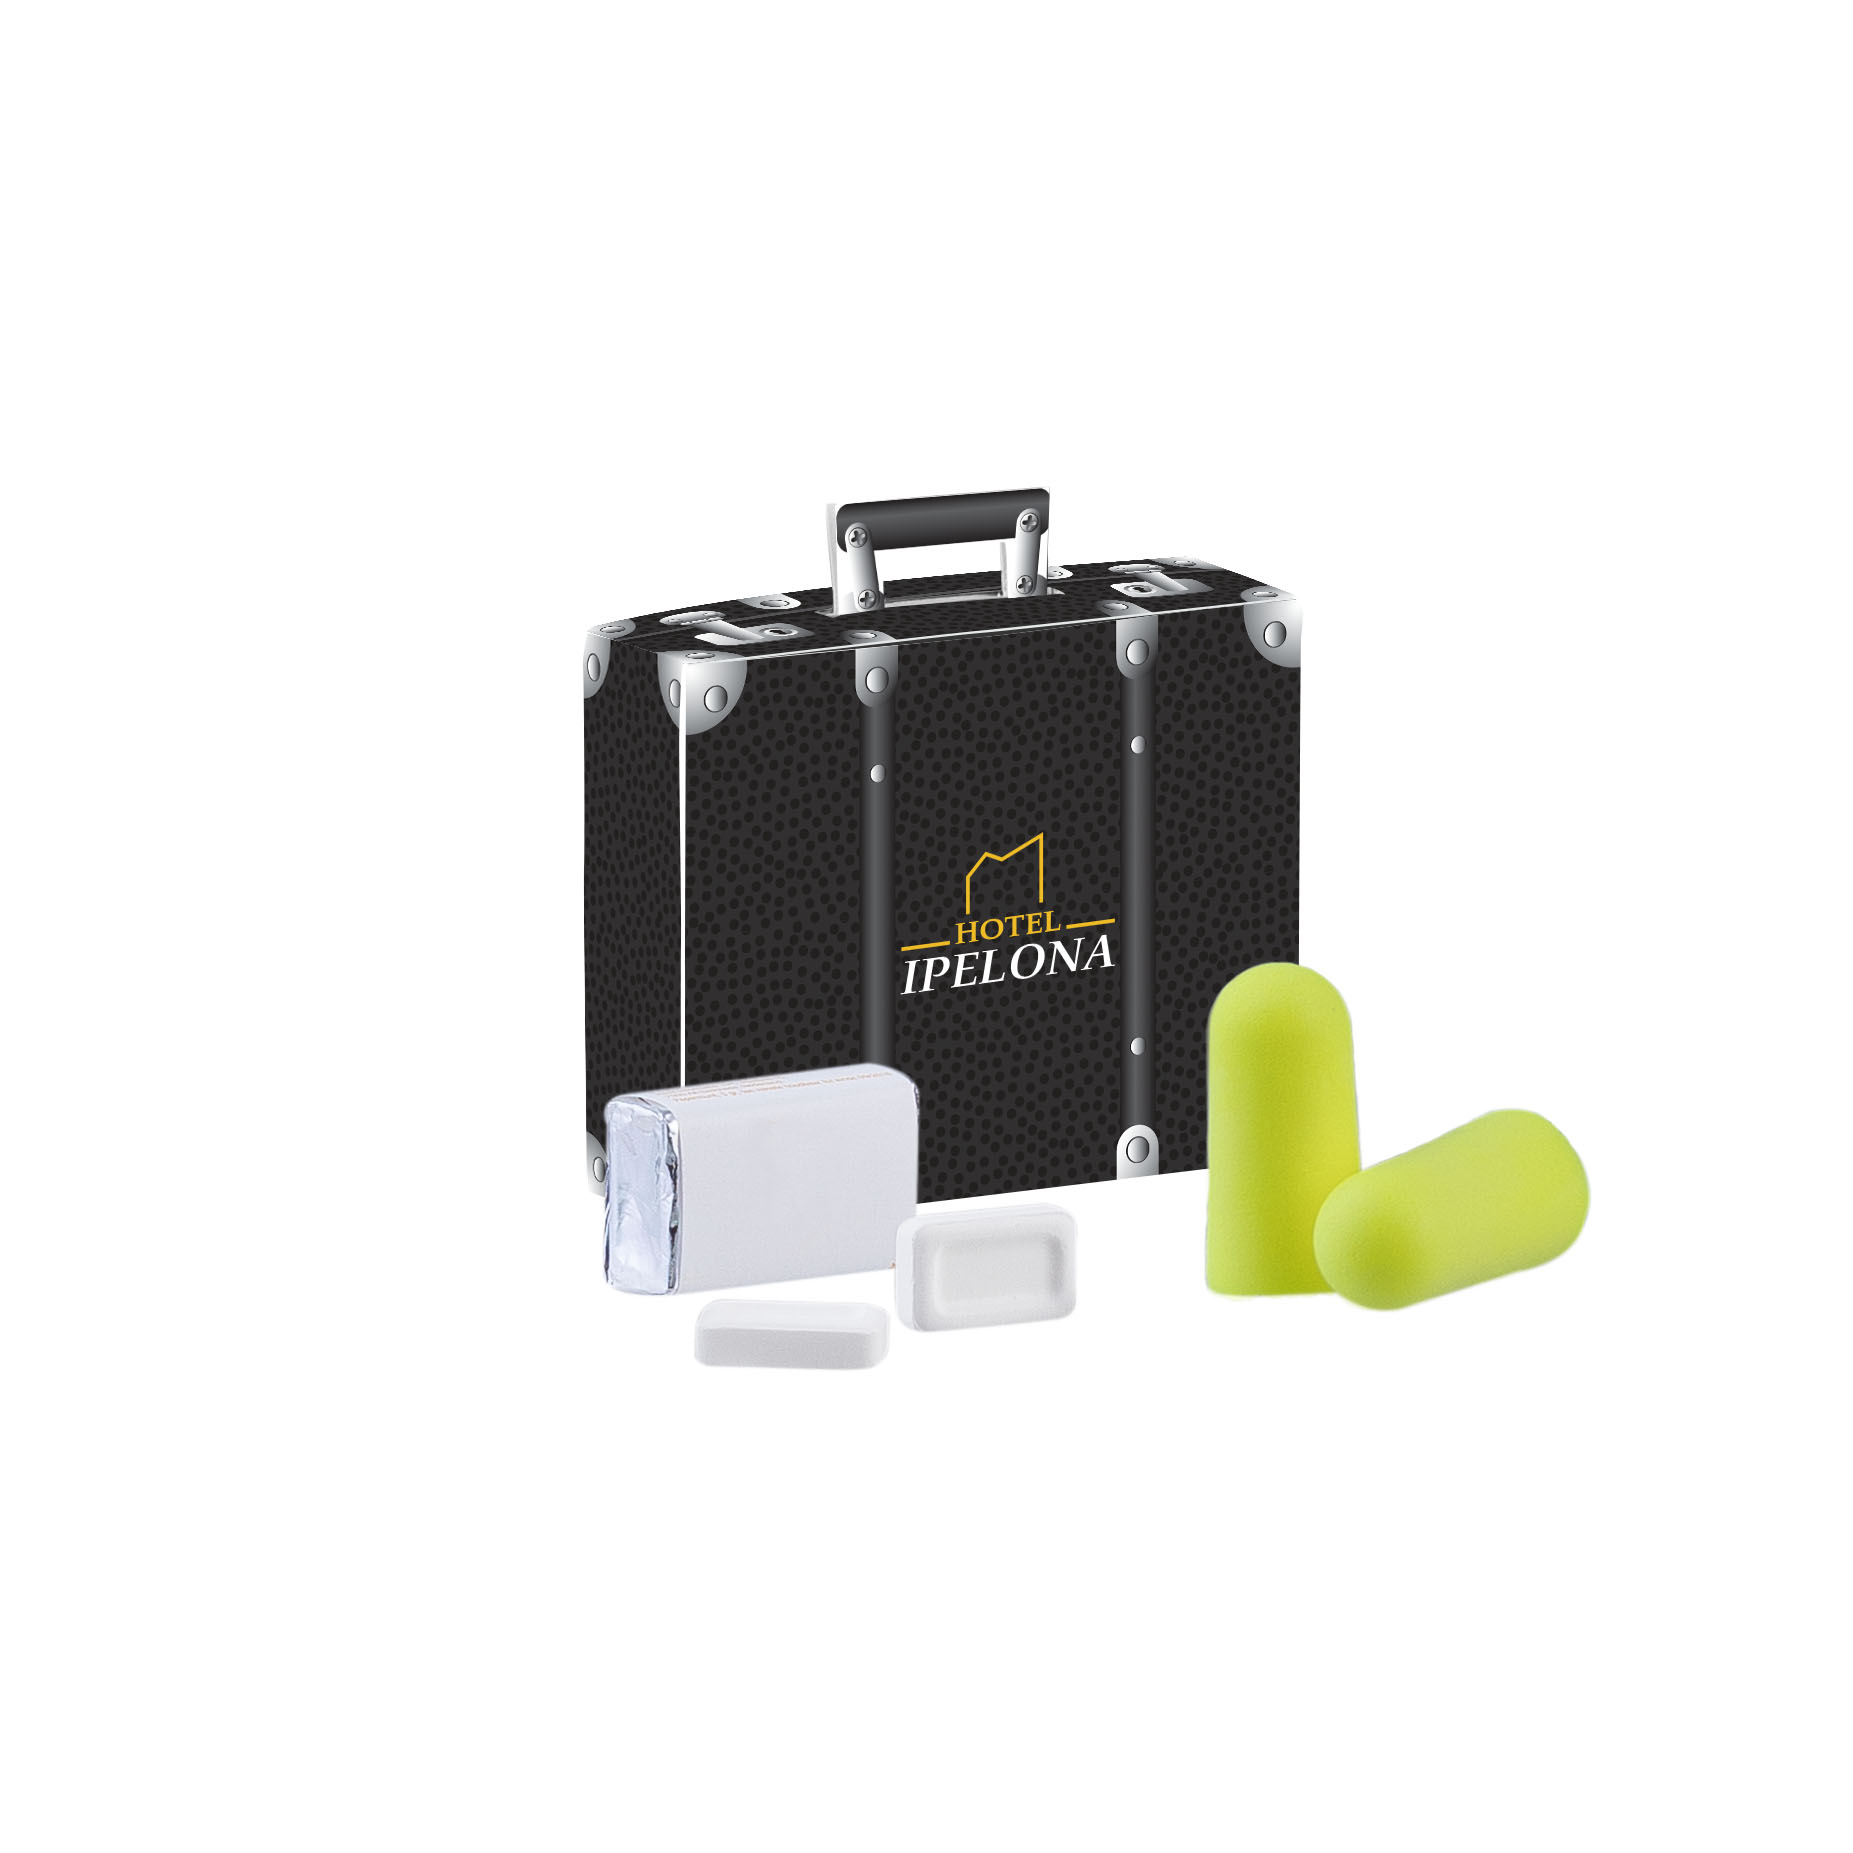 Bouchons d'oreille jaunes avec atténuation sonore et pastilles de menthe dans une valise - Le Passage - Zaprinta Belgique